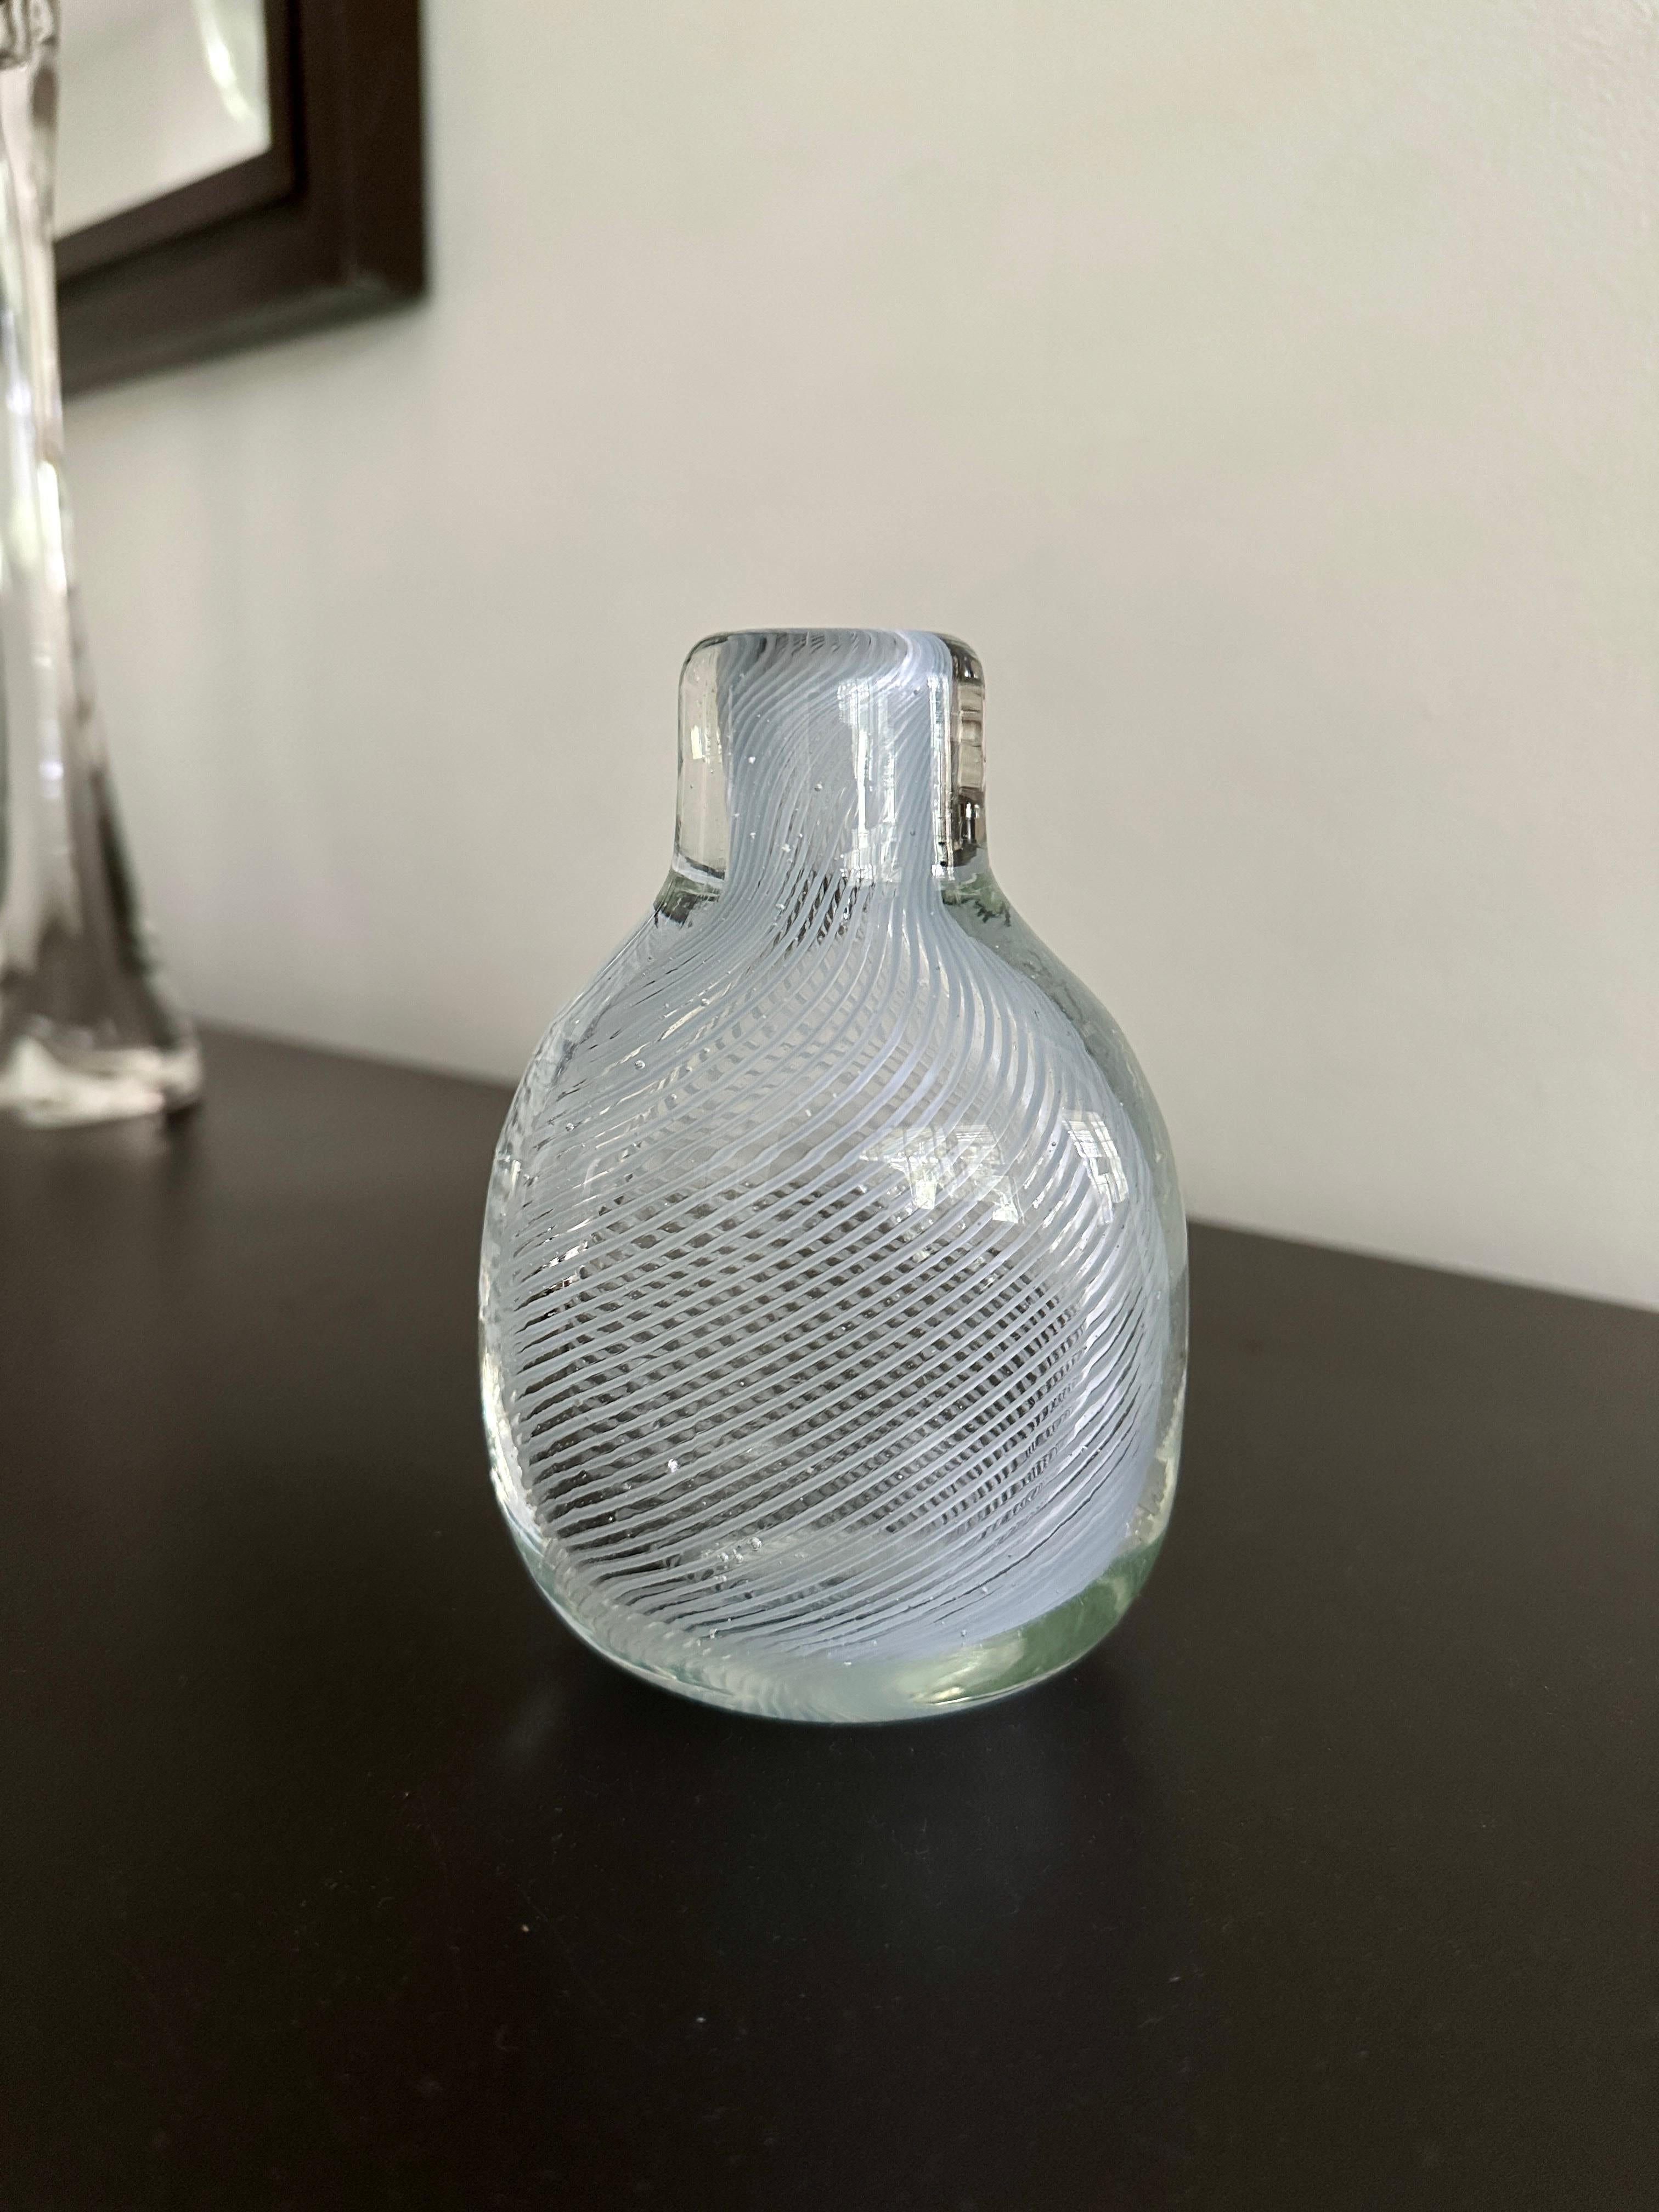 Une bouteille conçue par Carlo Scarpa pour Venini au milieu des années 1930. La bouteille est d'une couleur bleu-vert très pâle et présente la méthode de soufflage de verre mezza filigrana. Un petit trésor qui ne se montre pas souvent. Le fond de la